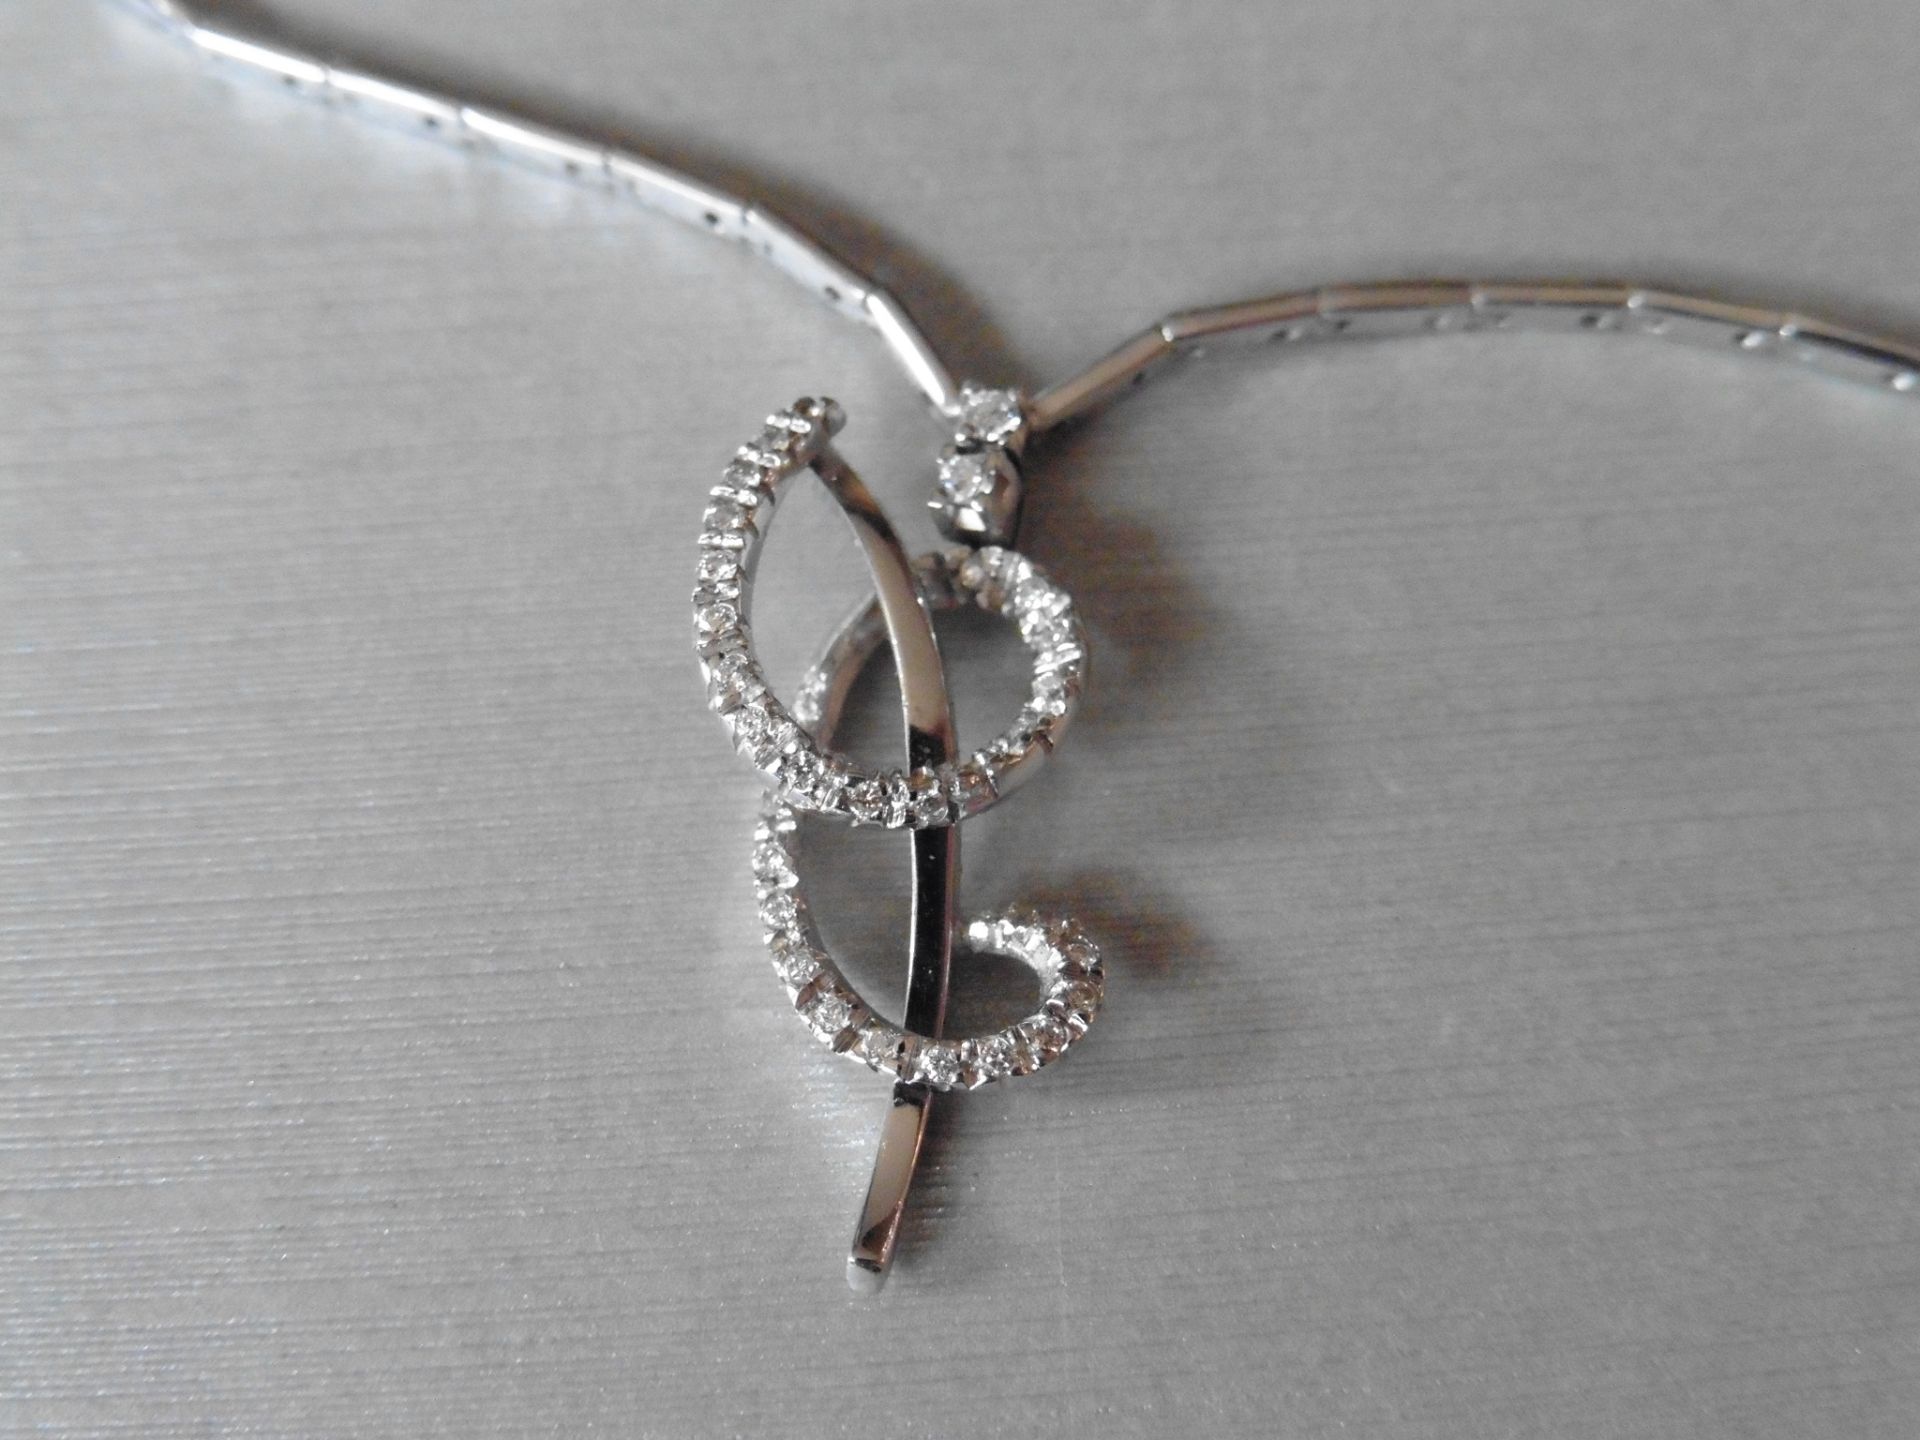 18ct white gold fancy diamond set pendant. Swirl design with small brilliant cut diamonds, H colour,